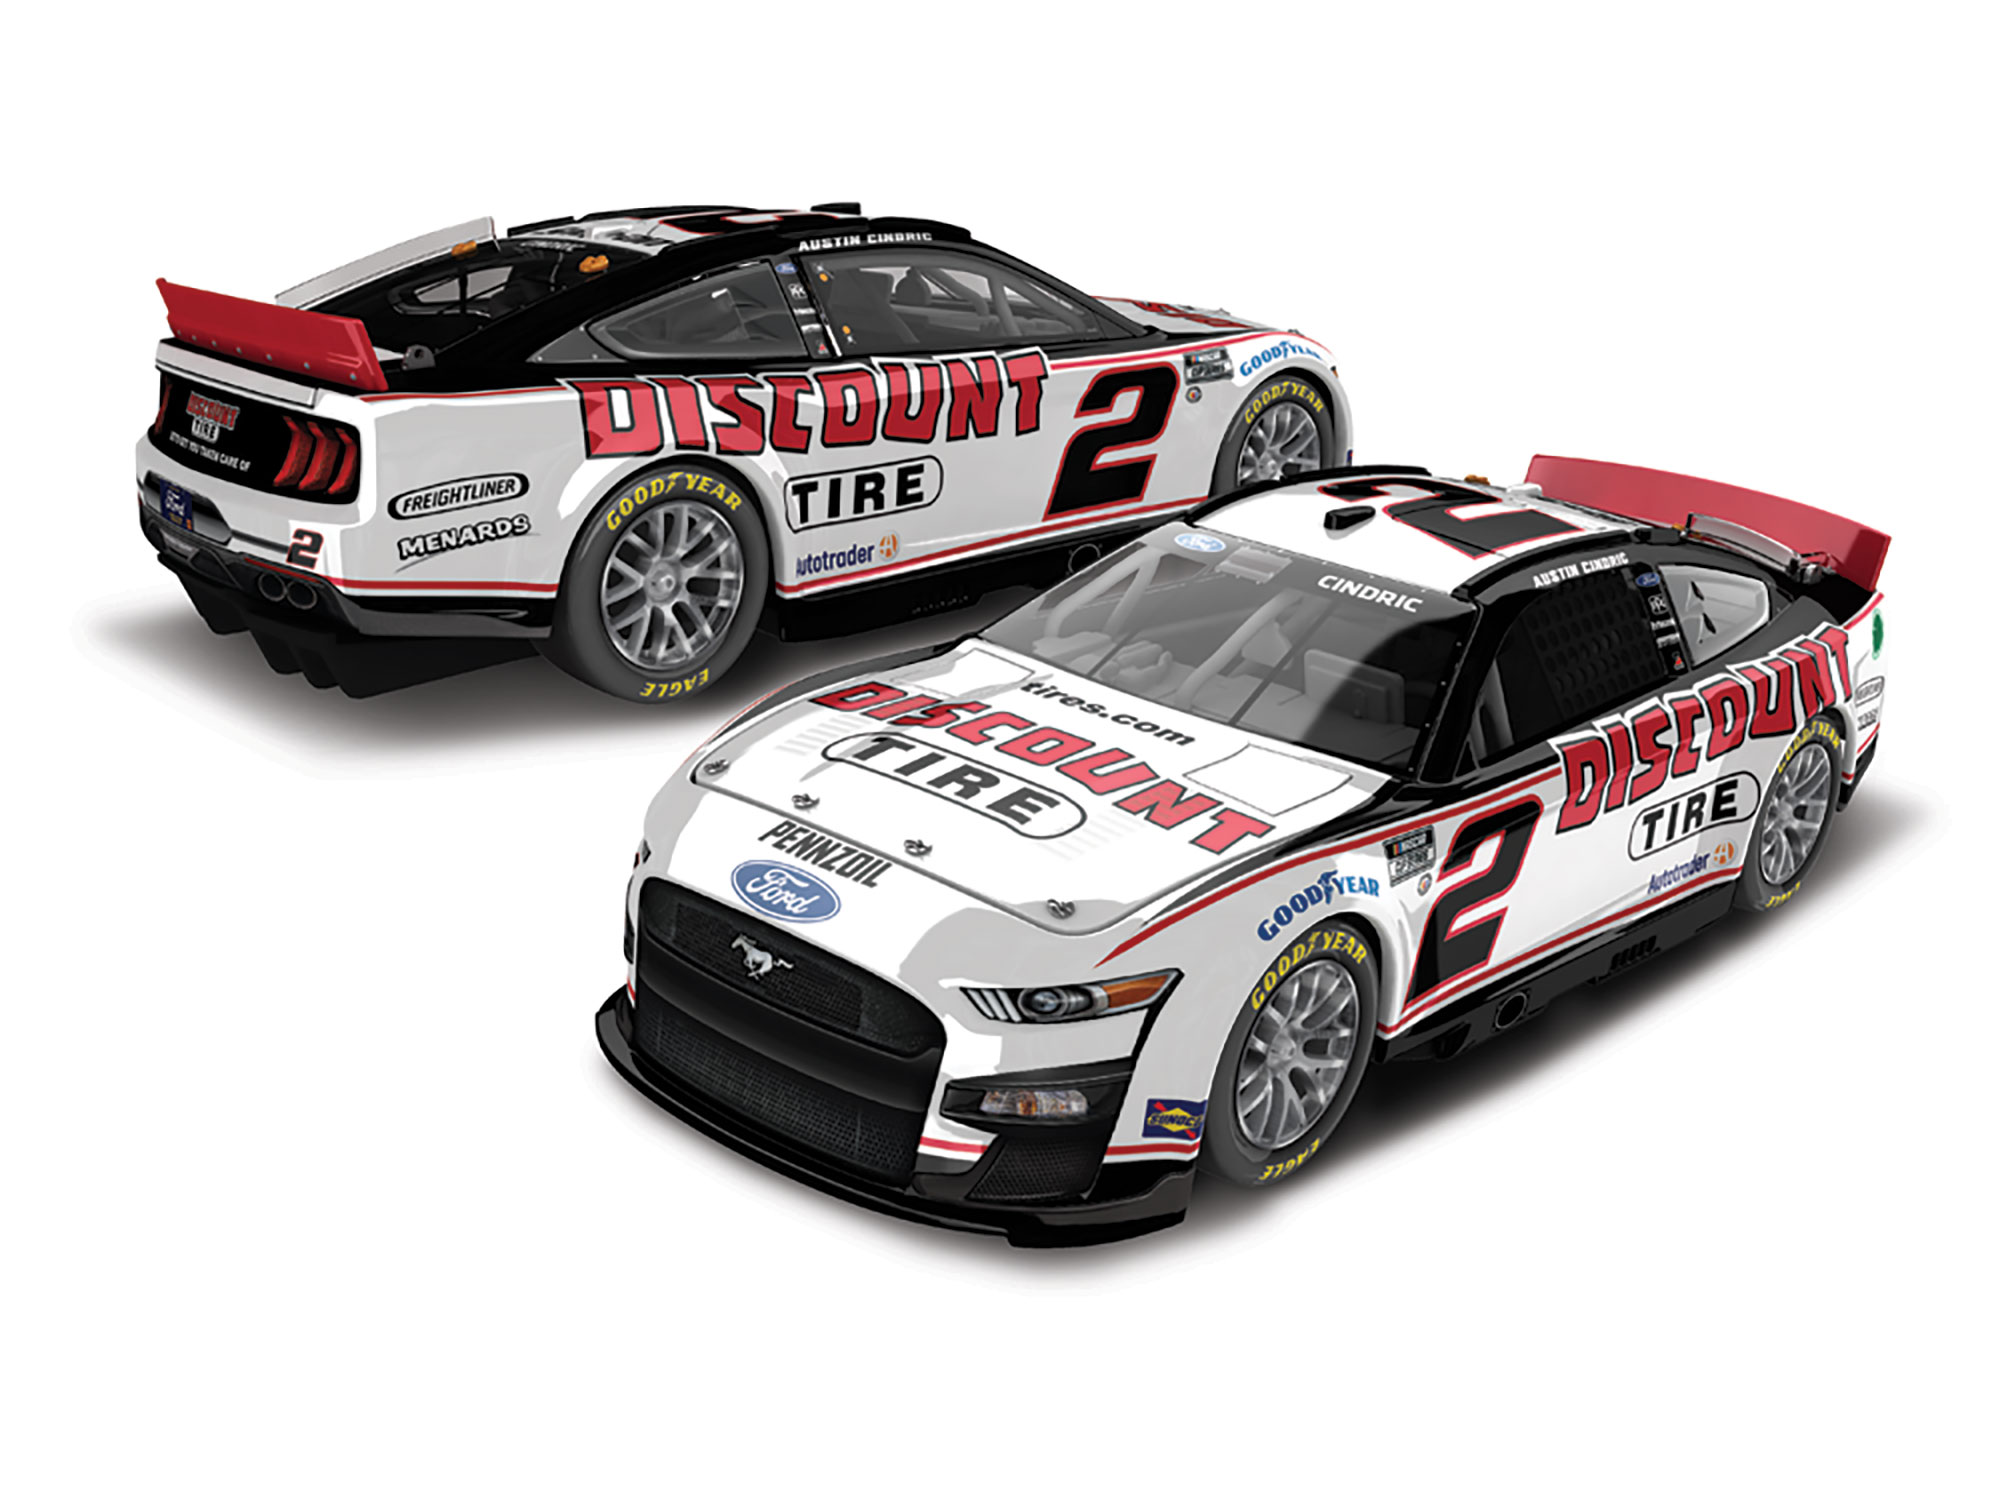 2023 Austin Cindric Team Penske Discount Tire paint scheme NASCAR Cup Series No. 2 car